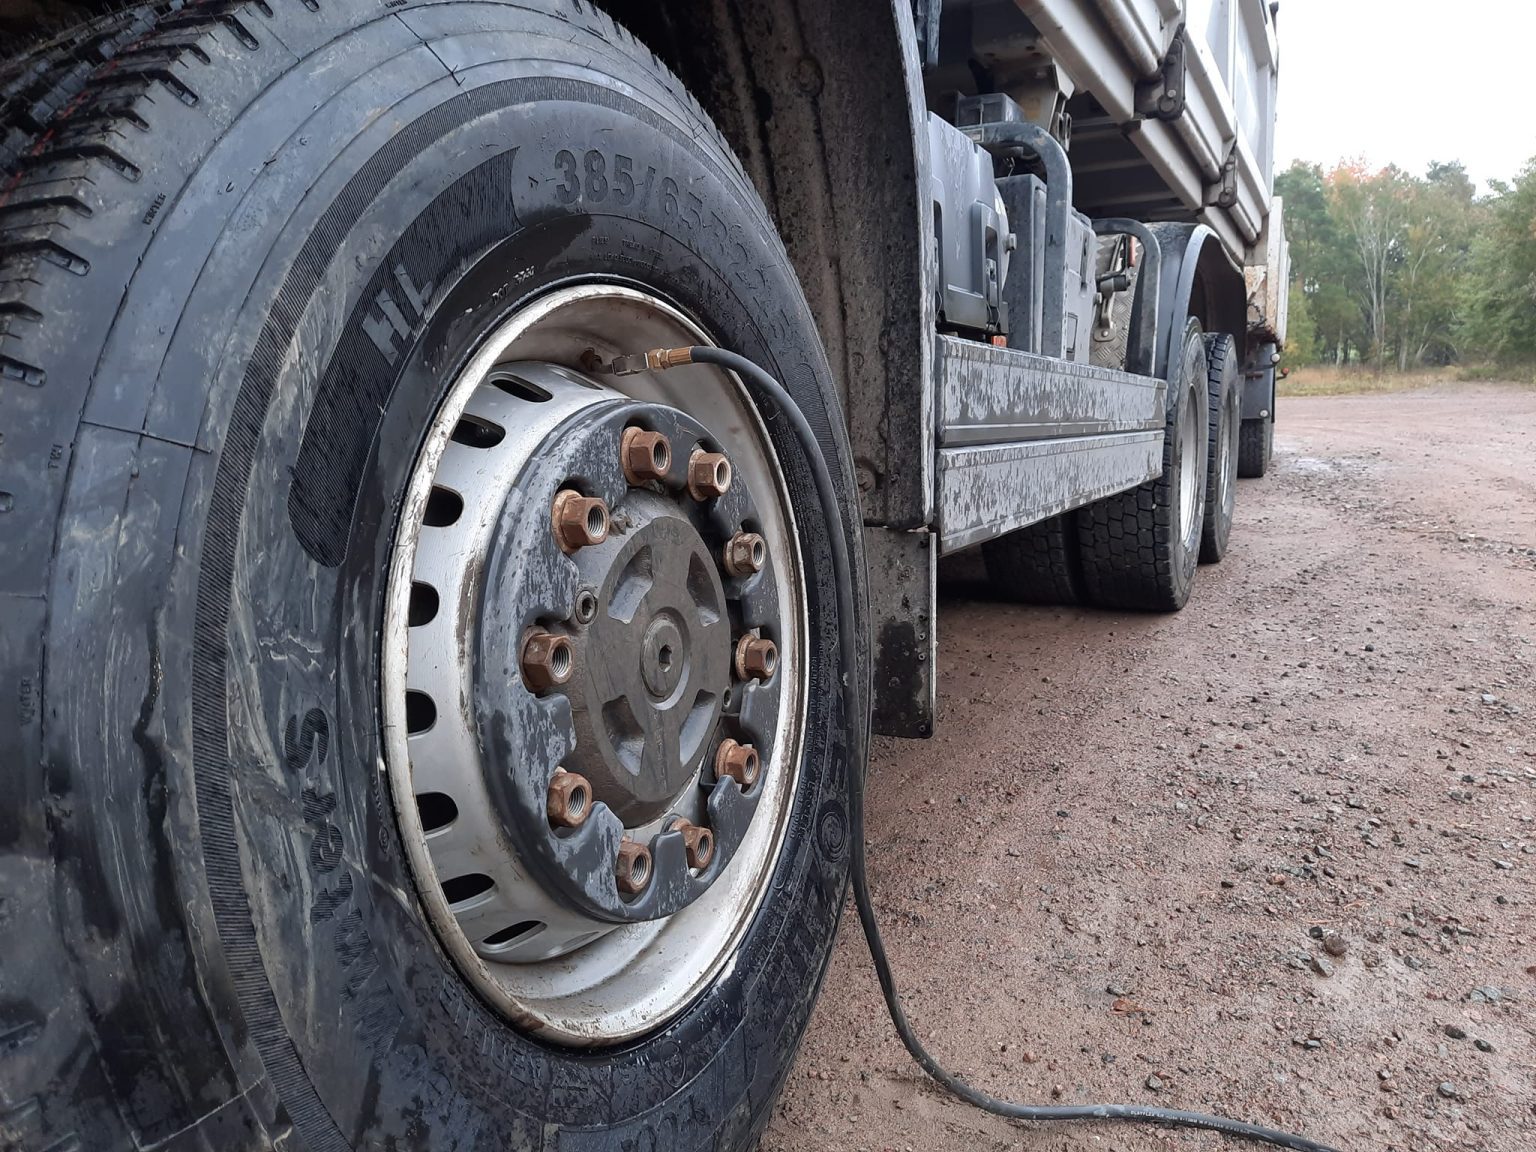 Pumpa däck på lastbil med mobil däckservice